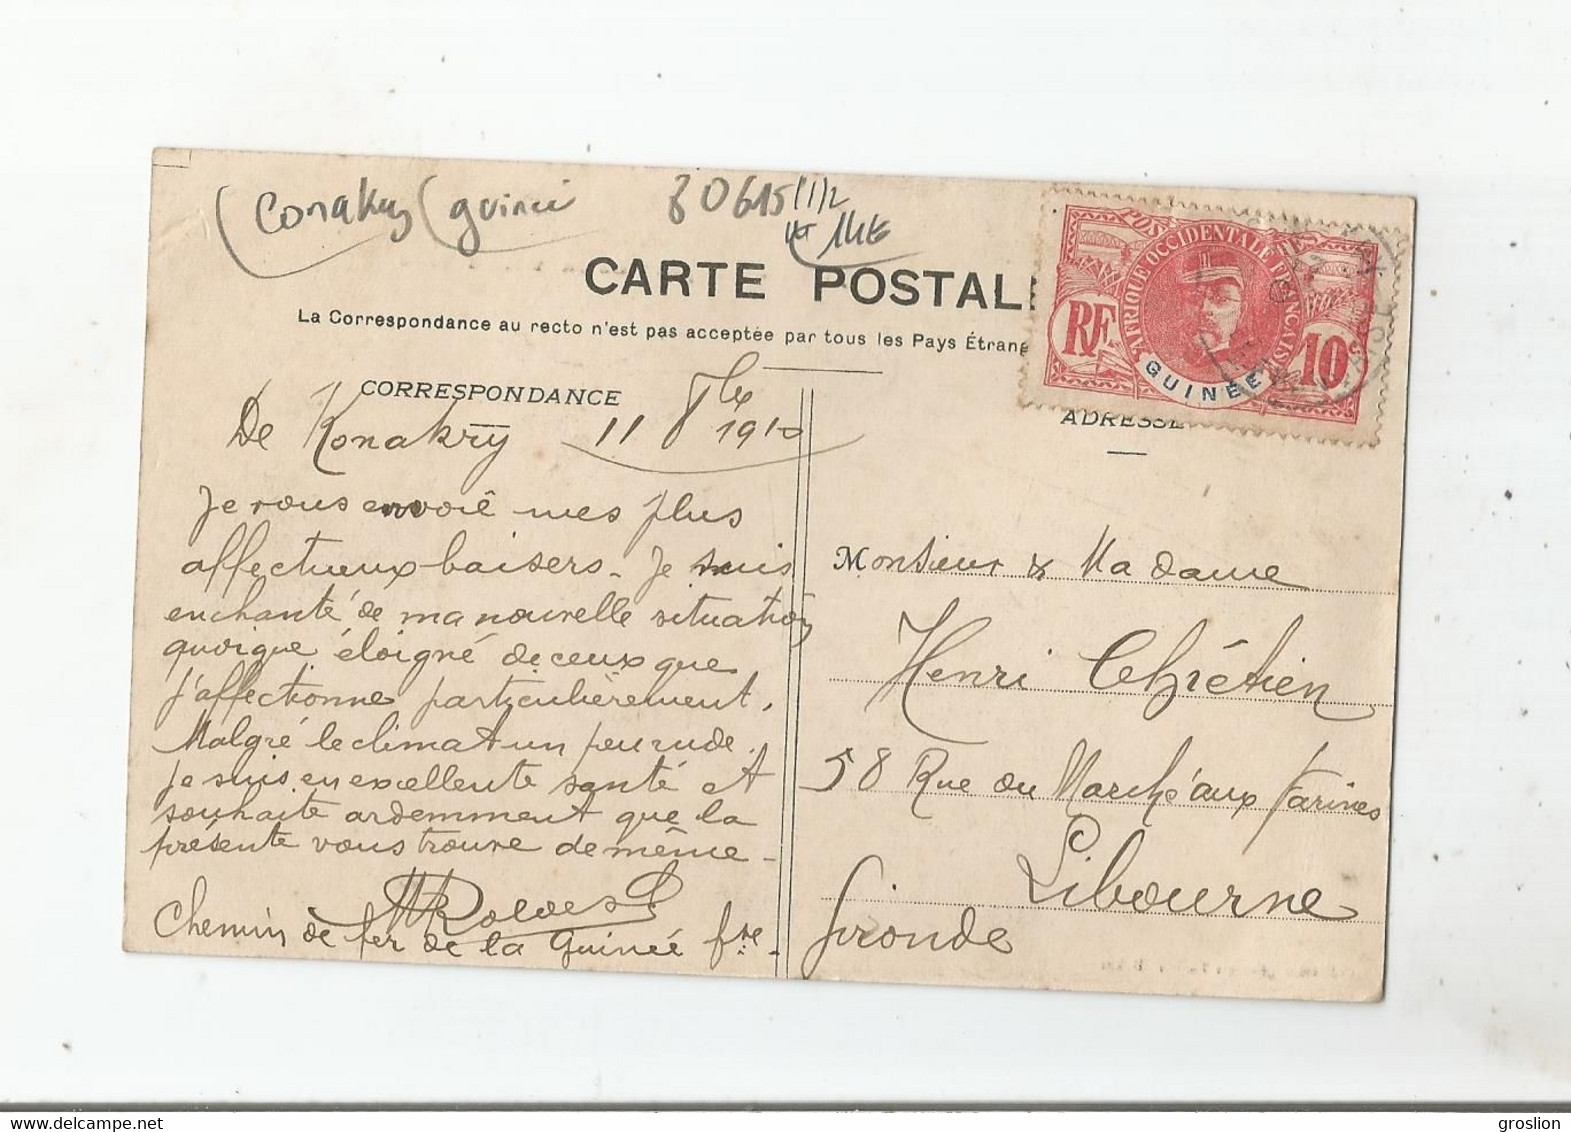 KONAKRY 577 AFRIQUE OCCIDENTALE 57 BATIMENTS DU CHEMIN DE FER POINT DE DEPART DE LA VOIE FERREE 1910 - Guinée Française